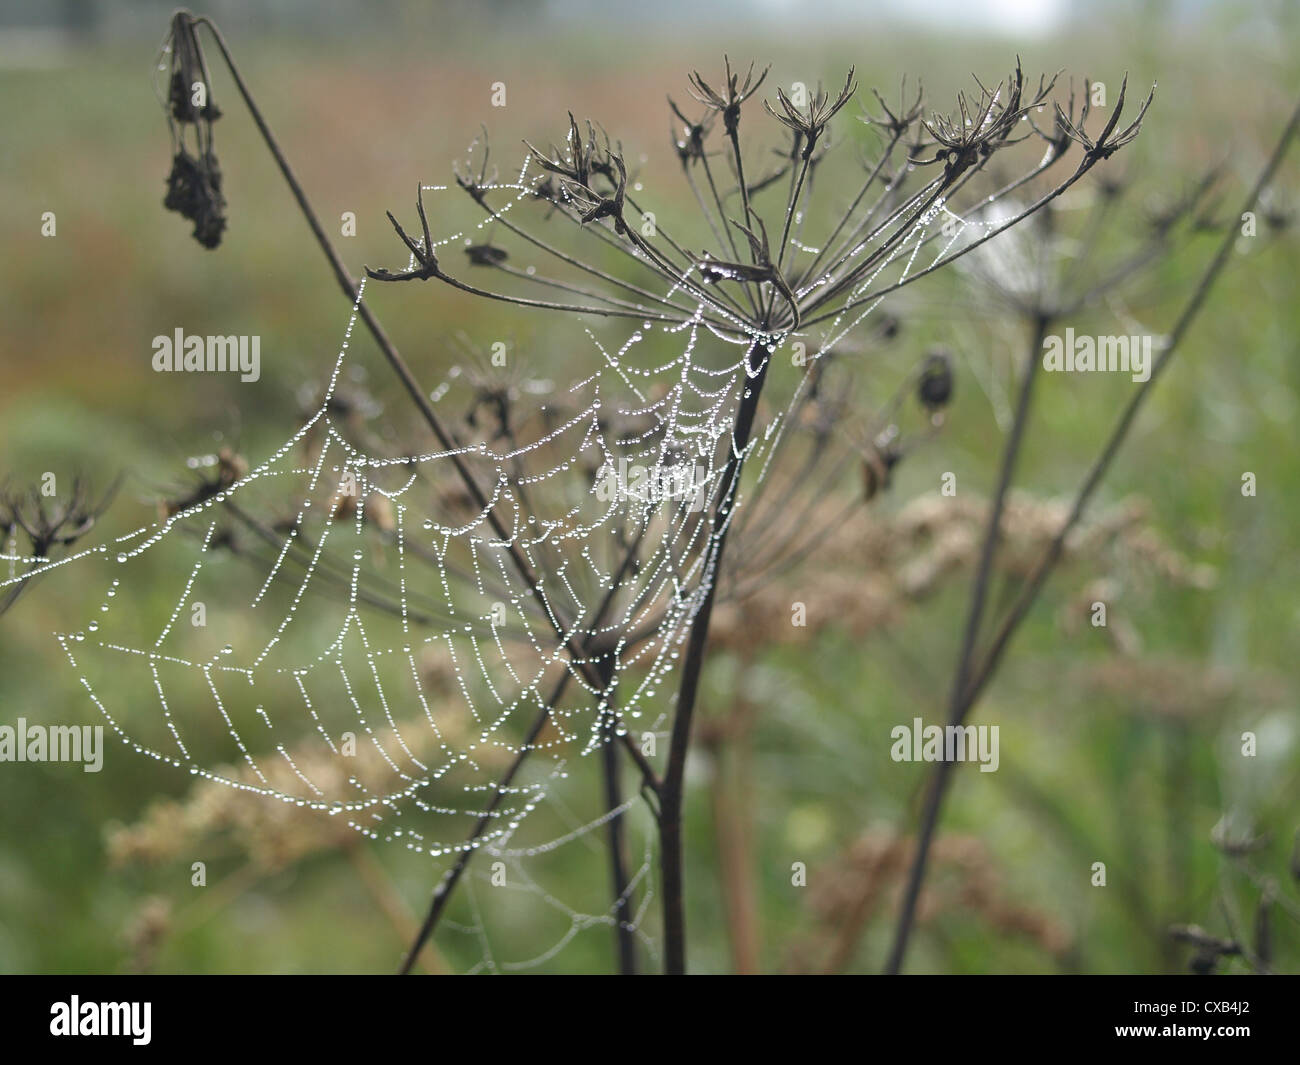 spider web on a hogweed in autumn / Spinnennetz an einem Bärenklau im Herbst Stock Photo